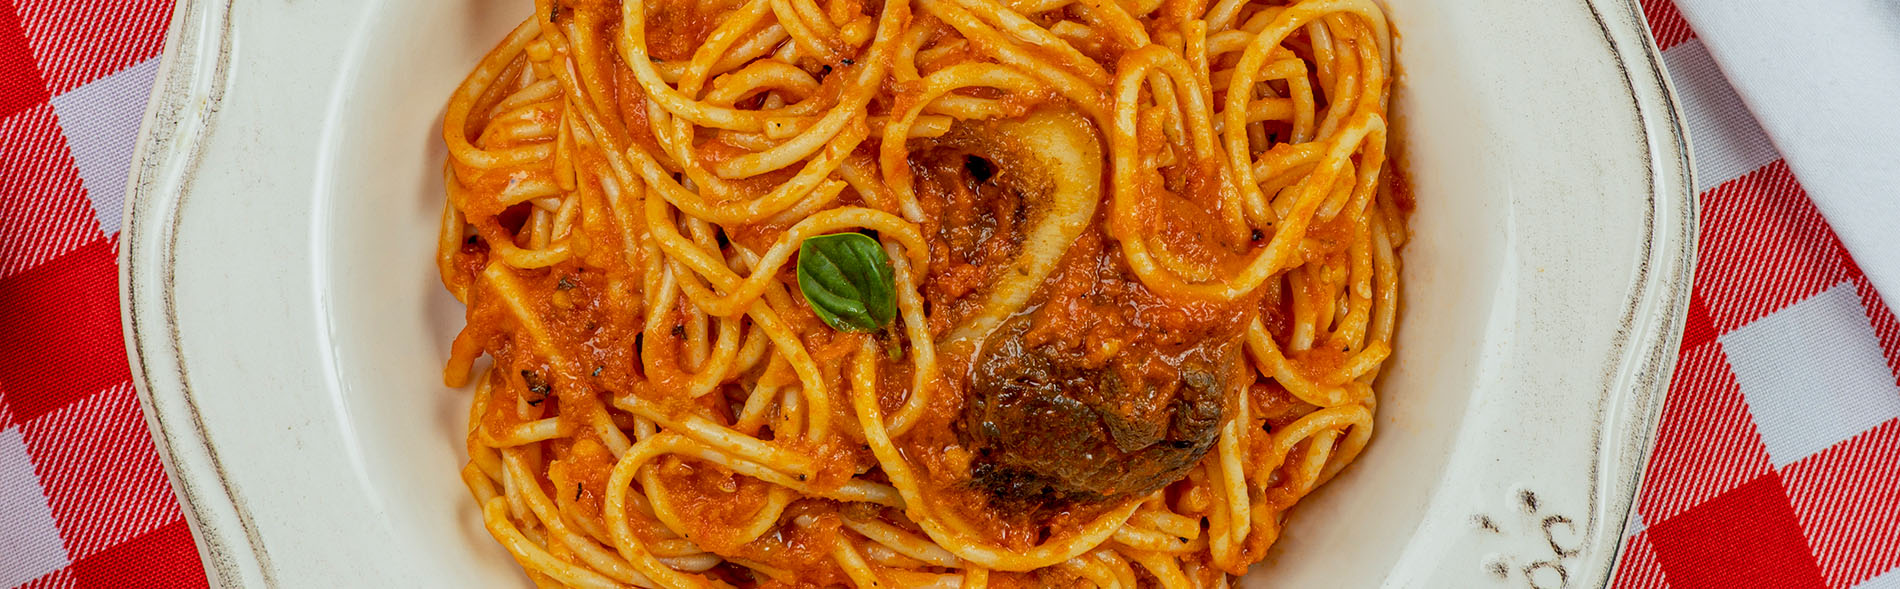 Spaghetti 5 con Salsa Napolitana y Osobuco | Carozzi me encanta